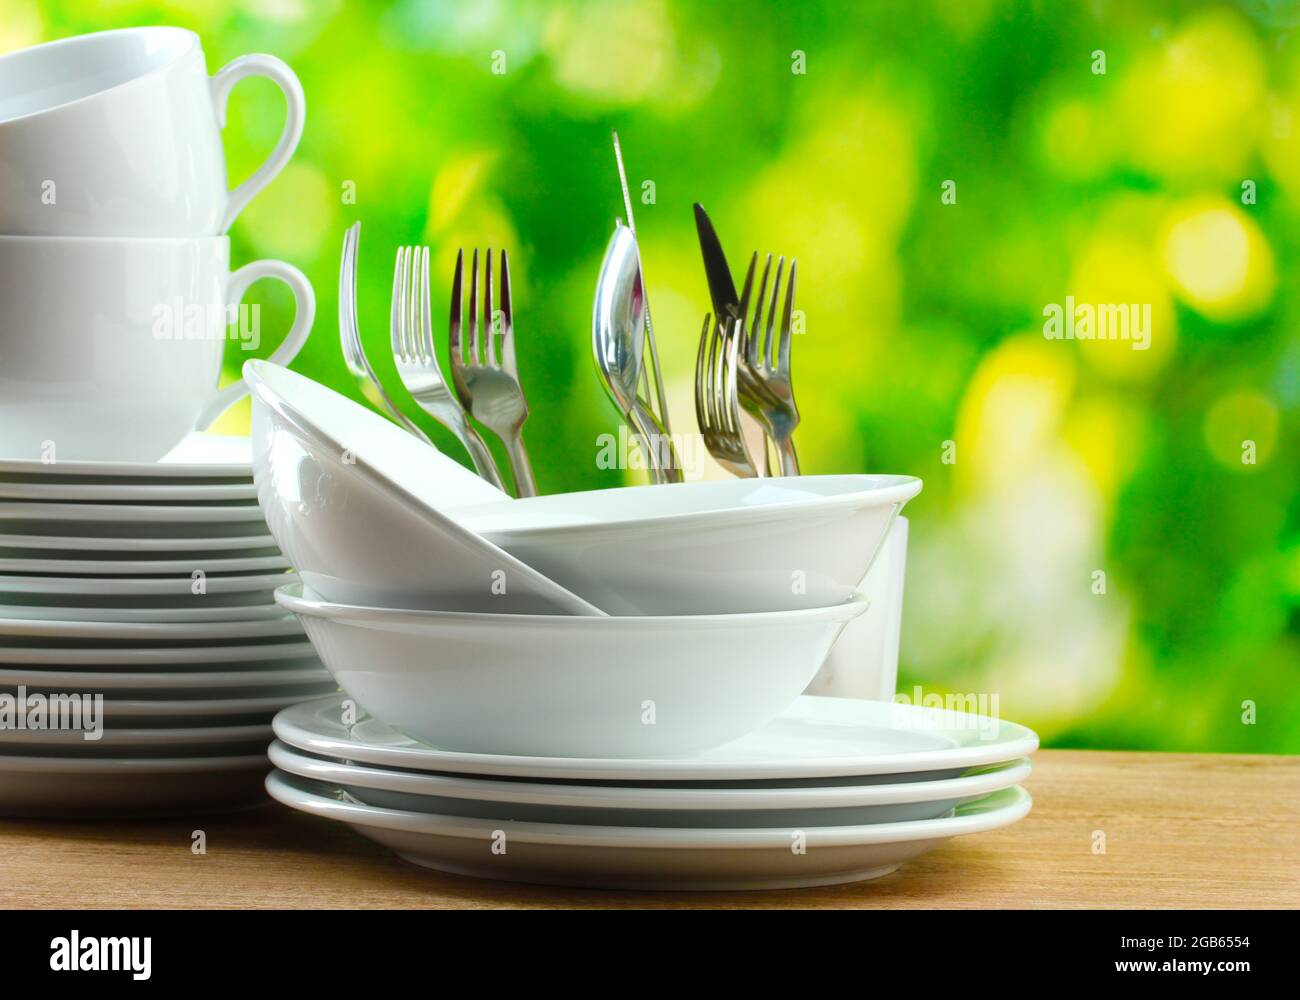 Sauberes Geschirr auf Holztisch auf grünem Hintergrund Stockfotografie -  Alamy